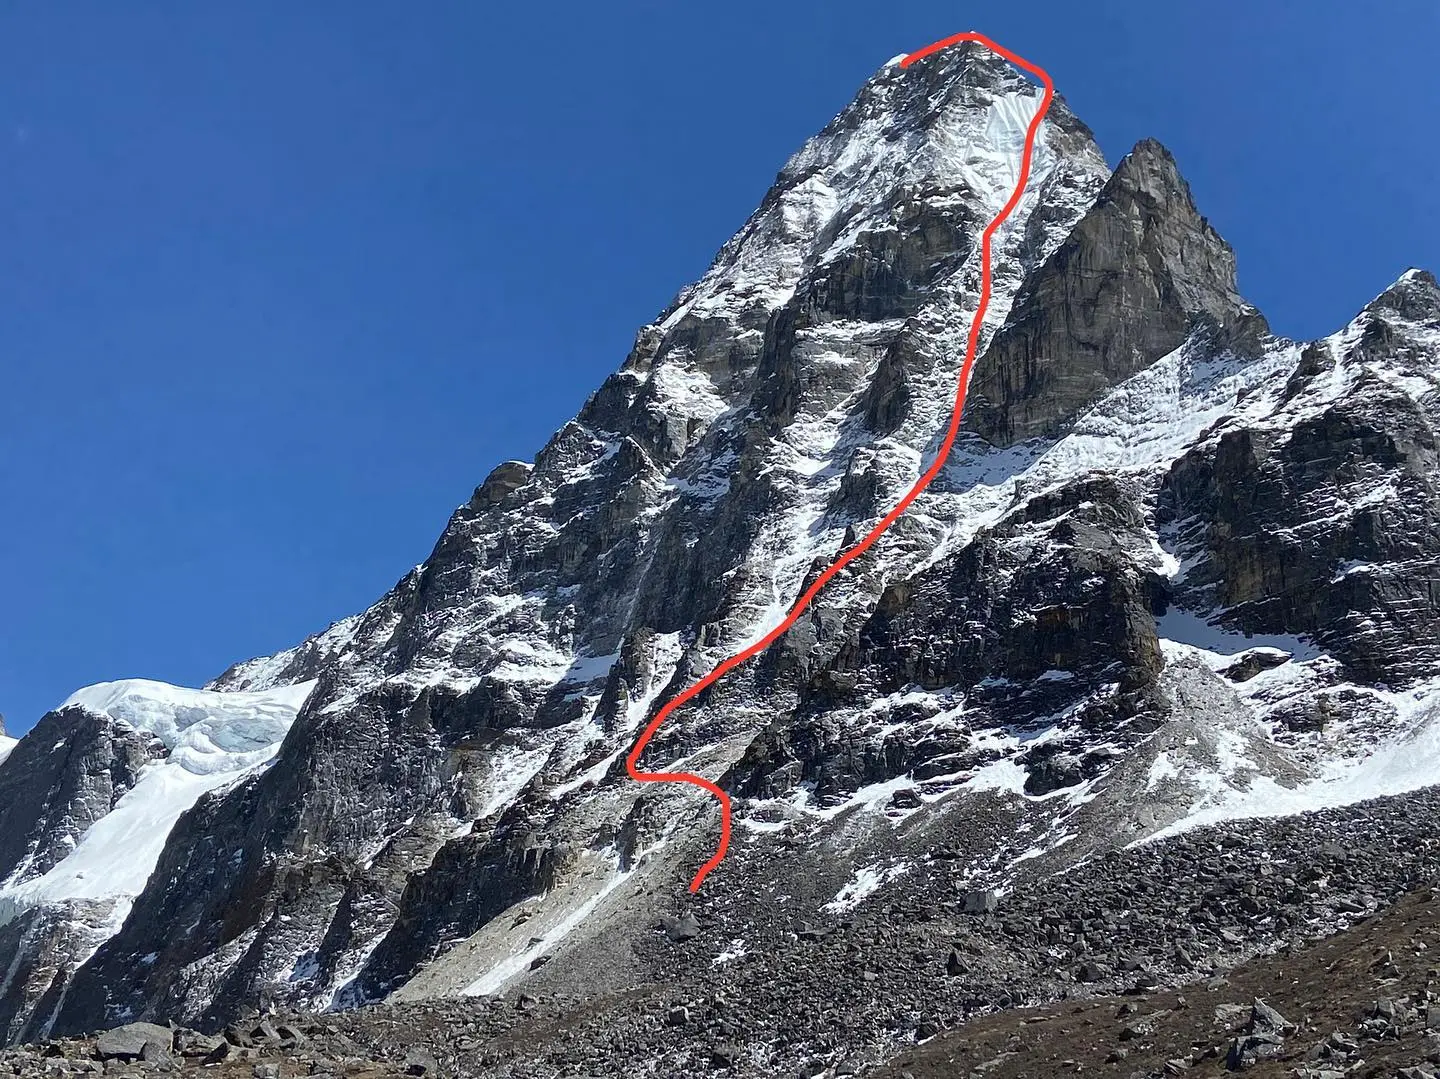 первый маршрут по северной стене горы Кангчунг Нуп (Kangchung Nup) высотой 6090 метров в Непале.. Фото Toshiyuki Yamada / Takeshi Tani